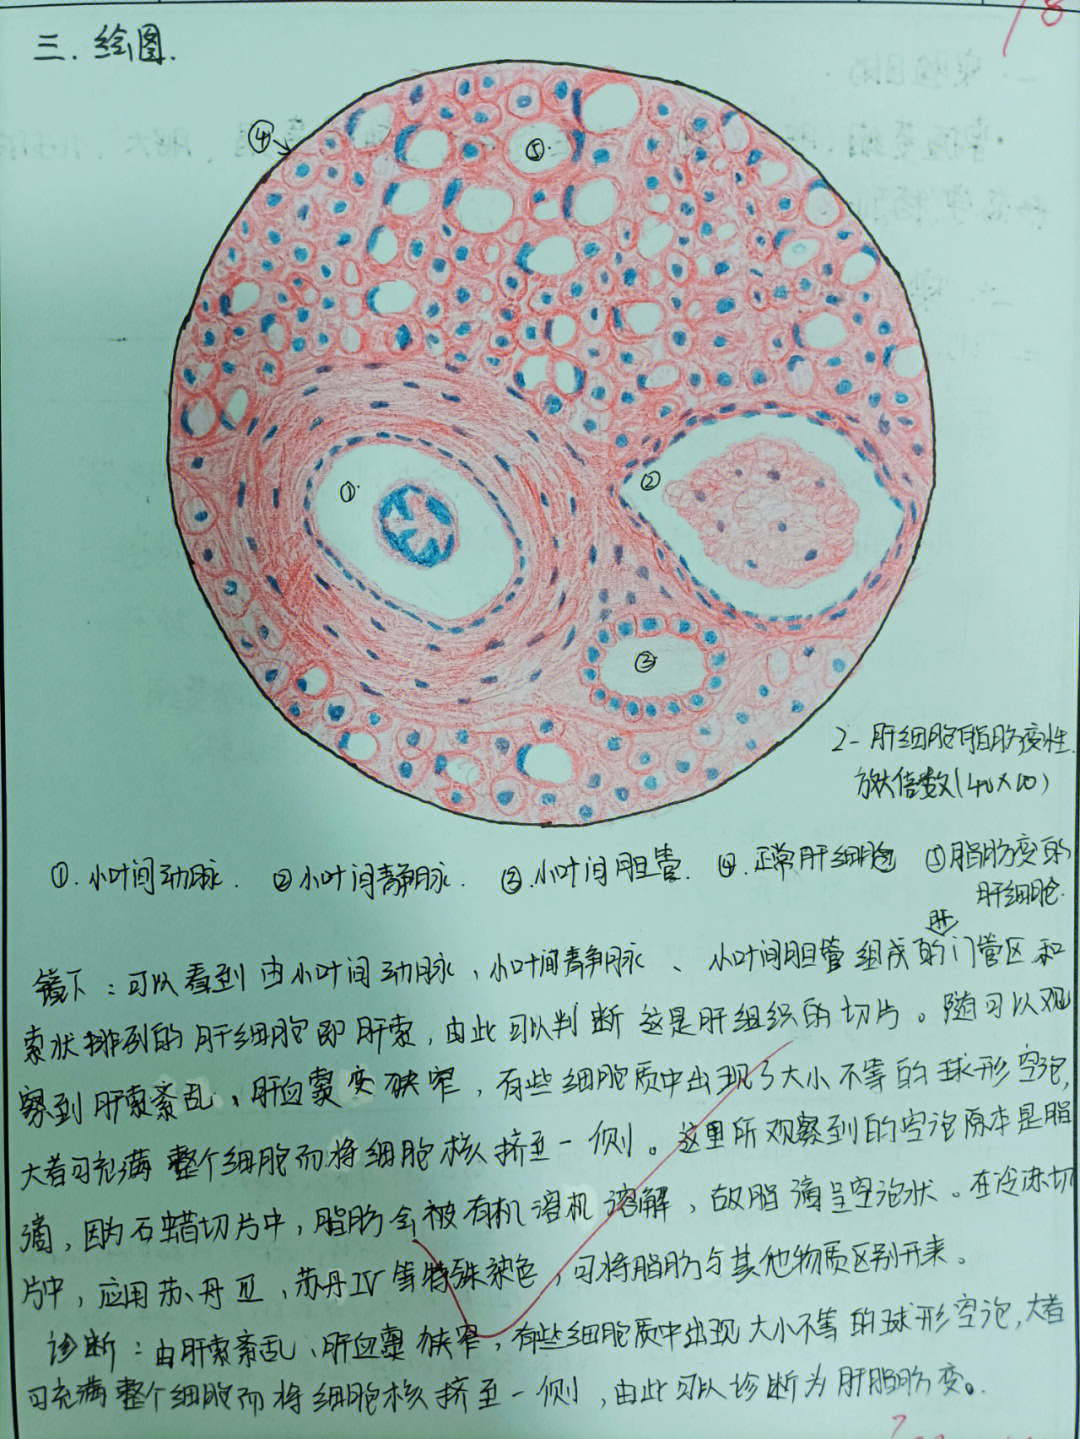 病理学 细胞,组织的适应和损伤 肝脂肪变性 绘图 镜下